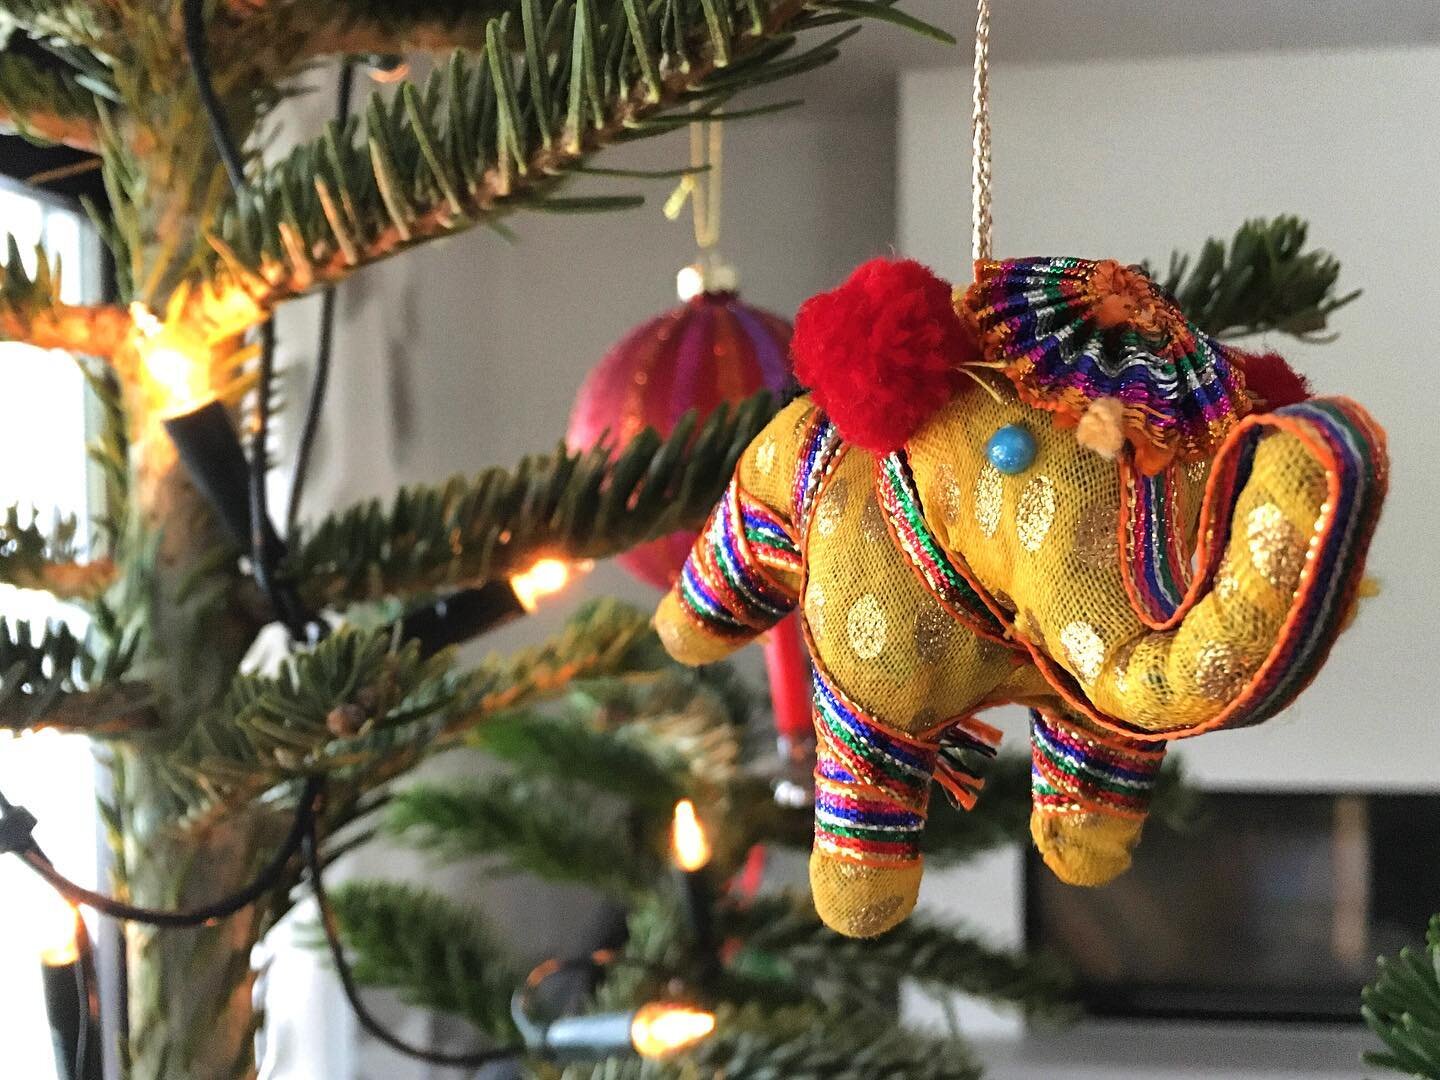 P&uuml;nktlich zu Weihnachten ist eine neue Sendung mit den bunten Elefanten aus Odisha in Deutschland angekommen. Auch am Weihnachtsbaum eine Freude🎄! In diesem Sinne: Fr&ouml;hliche Weihnachten an alle🙏🏻!